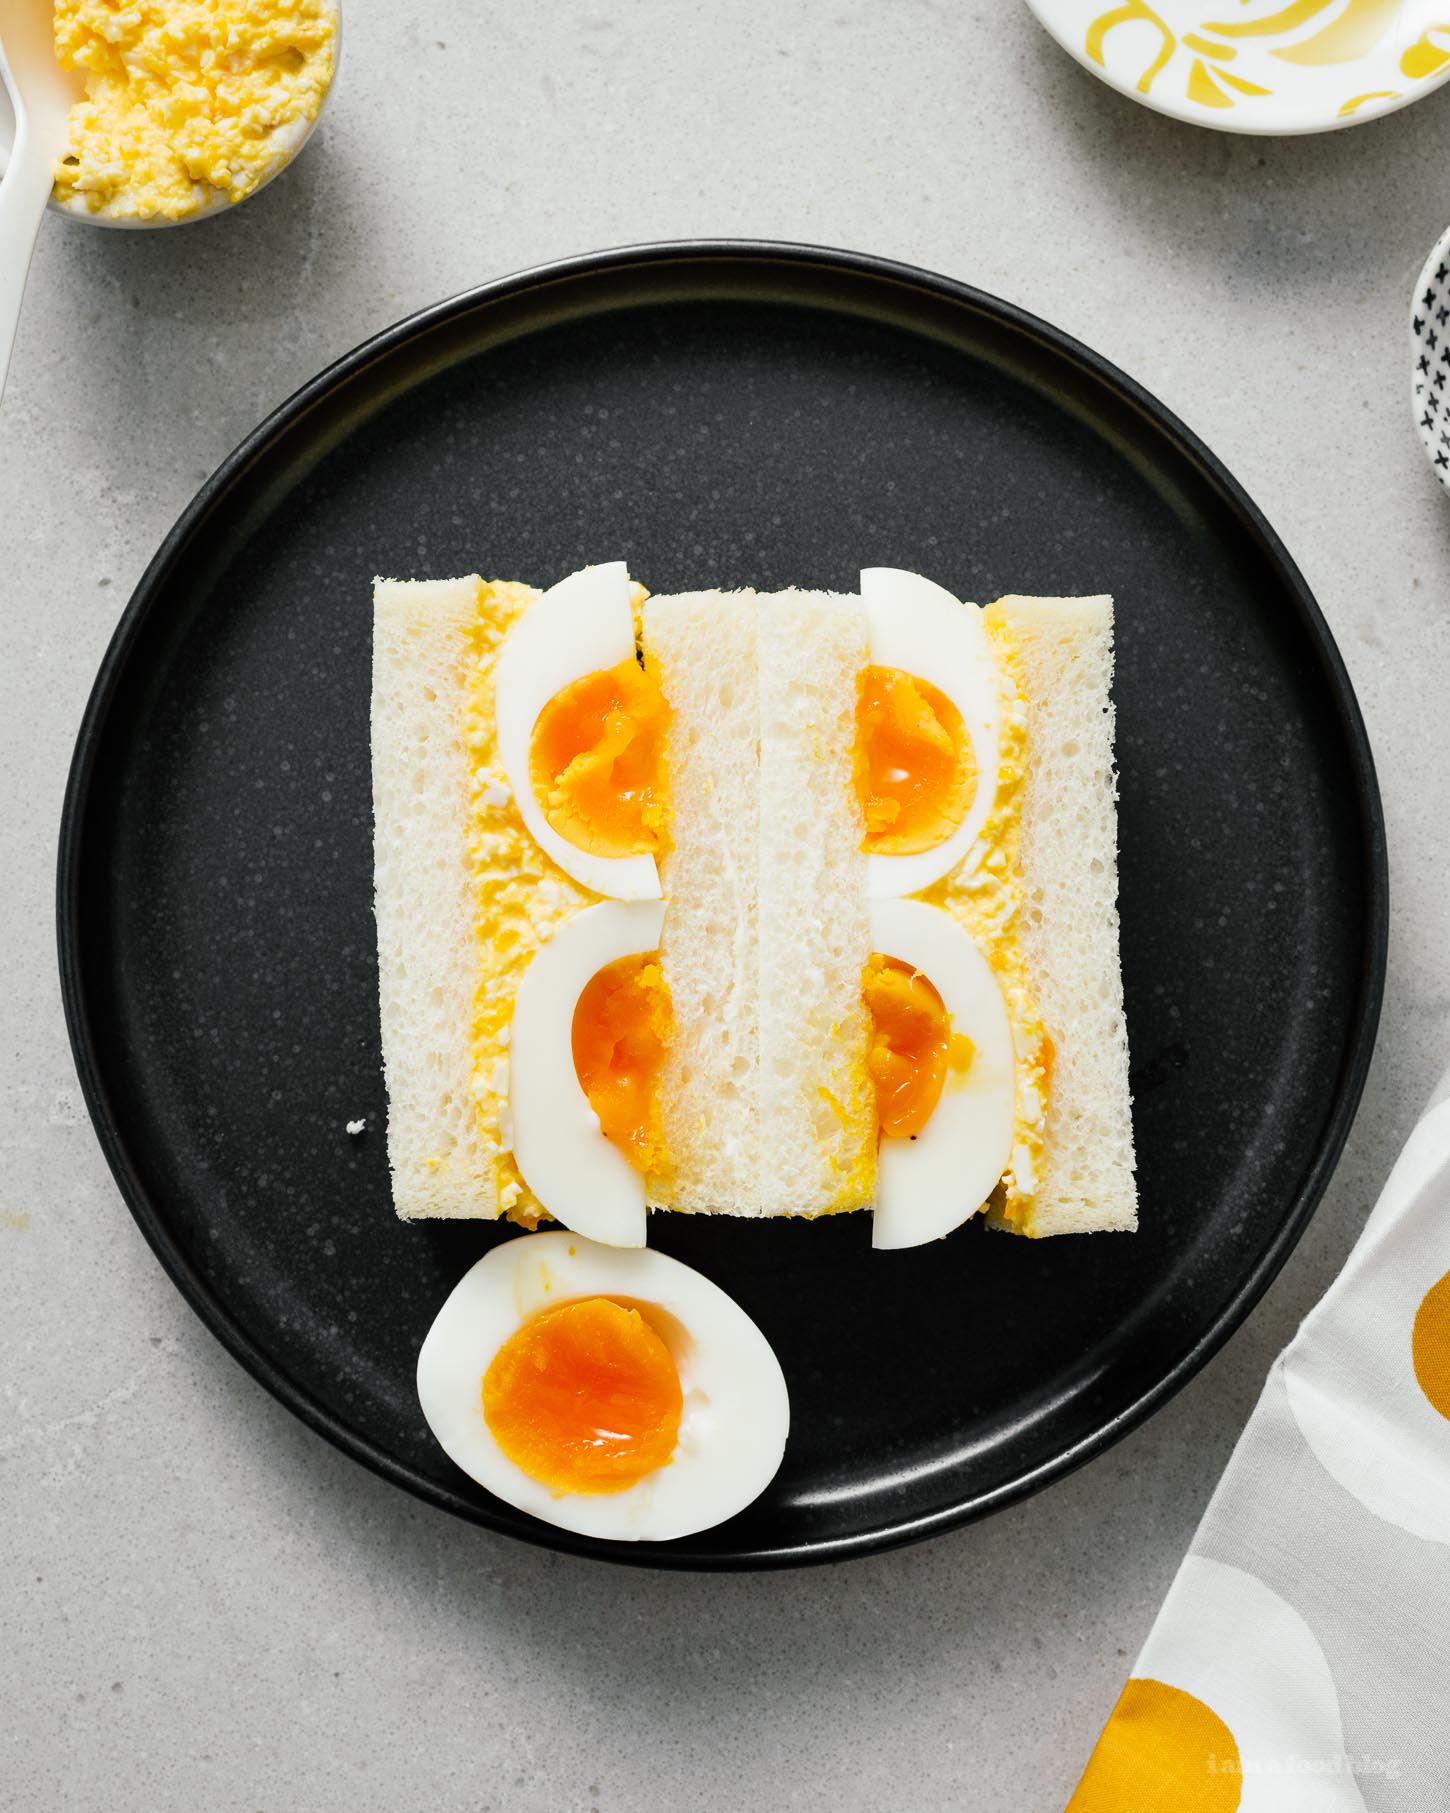 Sandwich à l'insalata d'ova giapponese! Amate i sandwich à l'insalata d'ova, ma vulete un toccu diversu? Mayonese kewpie cremosa è ova cunfitti facenu stu sandwich un vincitore. Cum'è i panini chì avete manghjatu in vacanze in Giappone, ma megliu;) #sandwiches #eggsalad #japanese #japanesefood #recipes #recipeoftheday #eggs